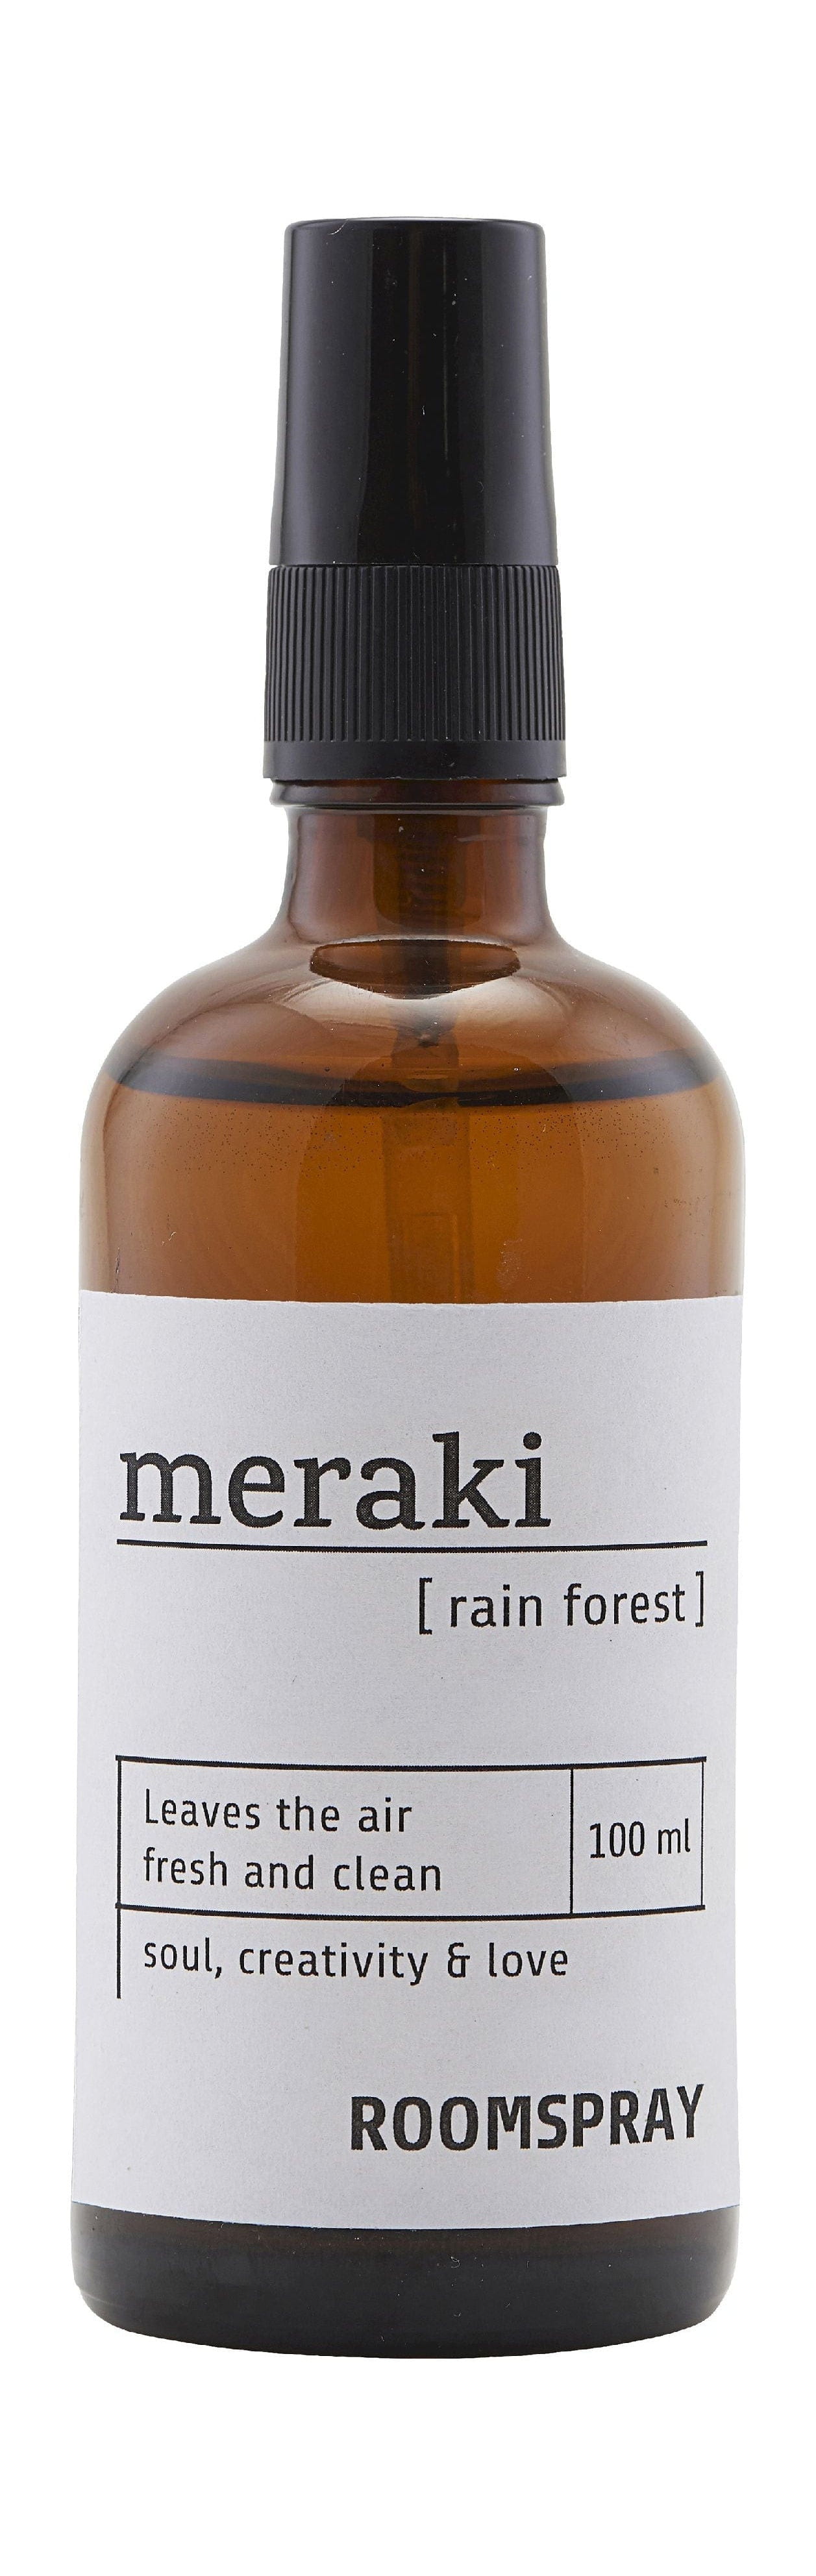 Spray per camere Meraki 100 ml, foresta pluviale